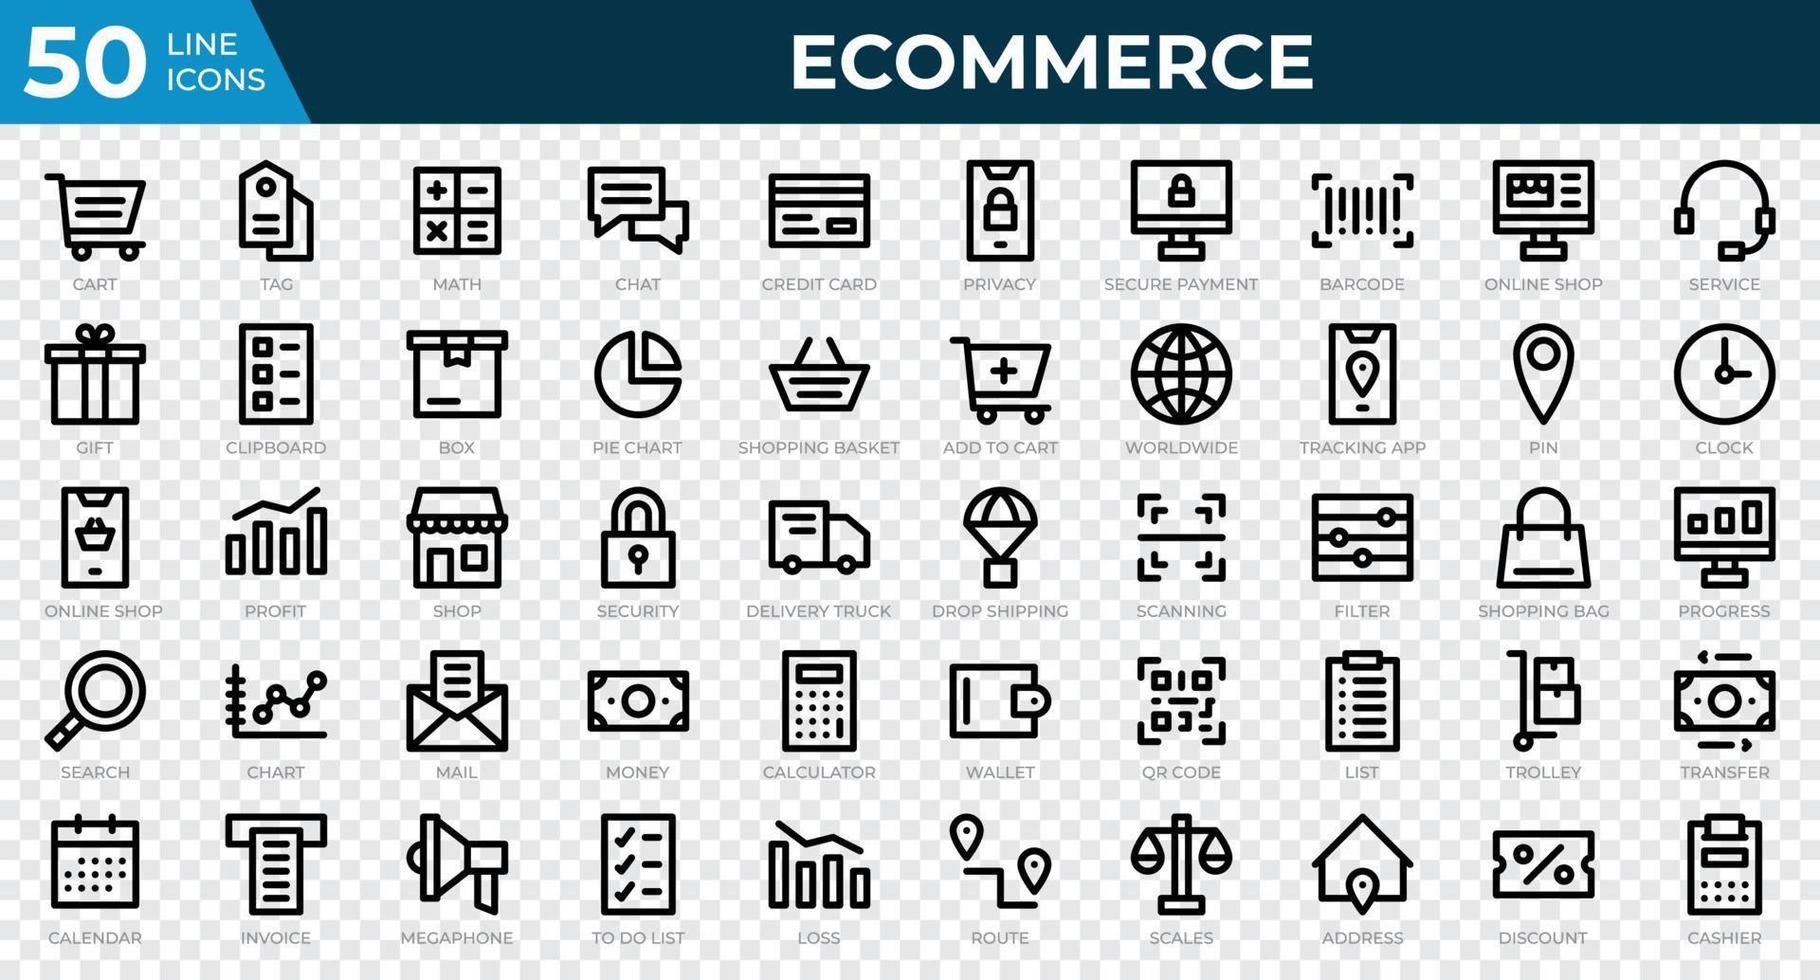 Satz von 50 E-Commerce-Websymbolen im Linienstil. Kreditkarte, Gewinn, Rechnung. Sammlung von Symbolen zu skizzieren. Vektor-Illustration vektor